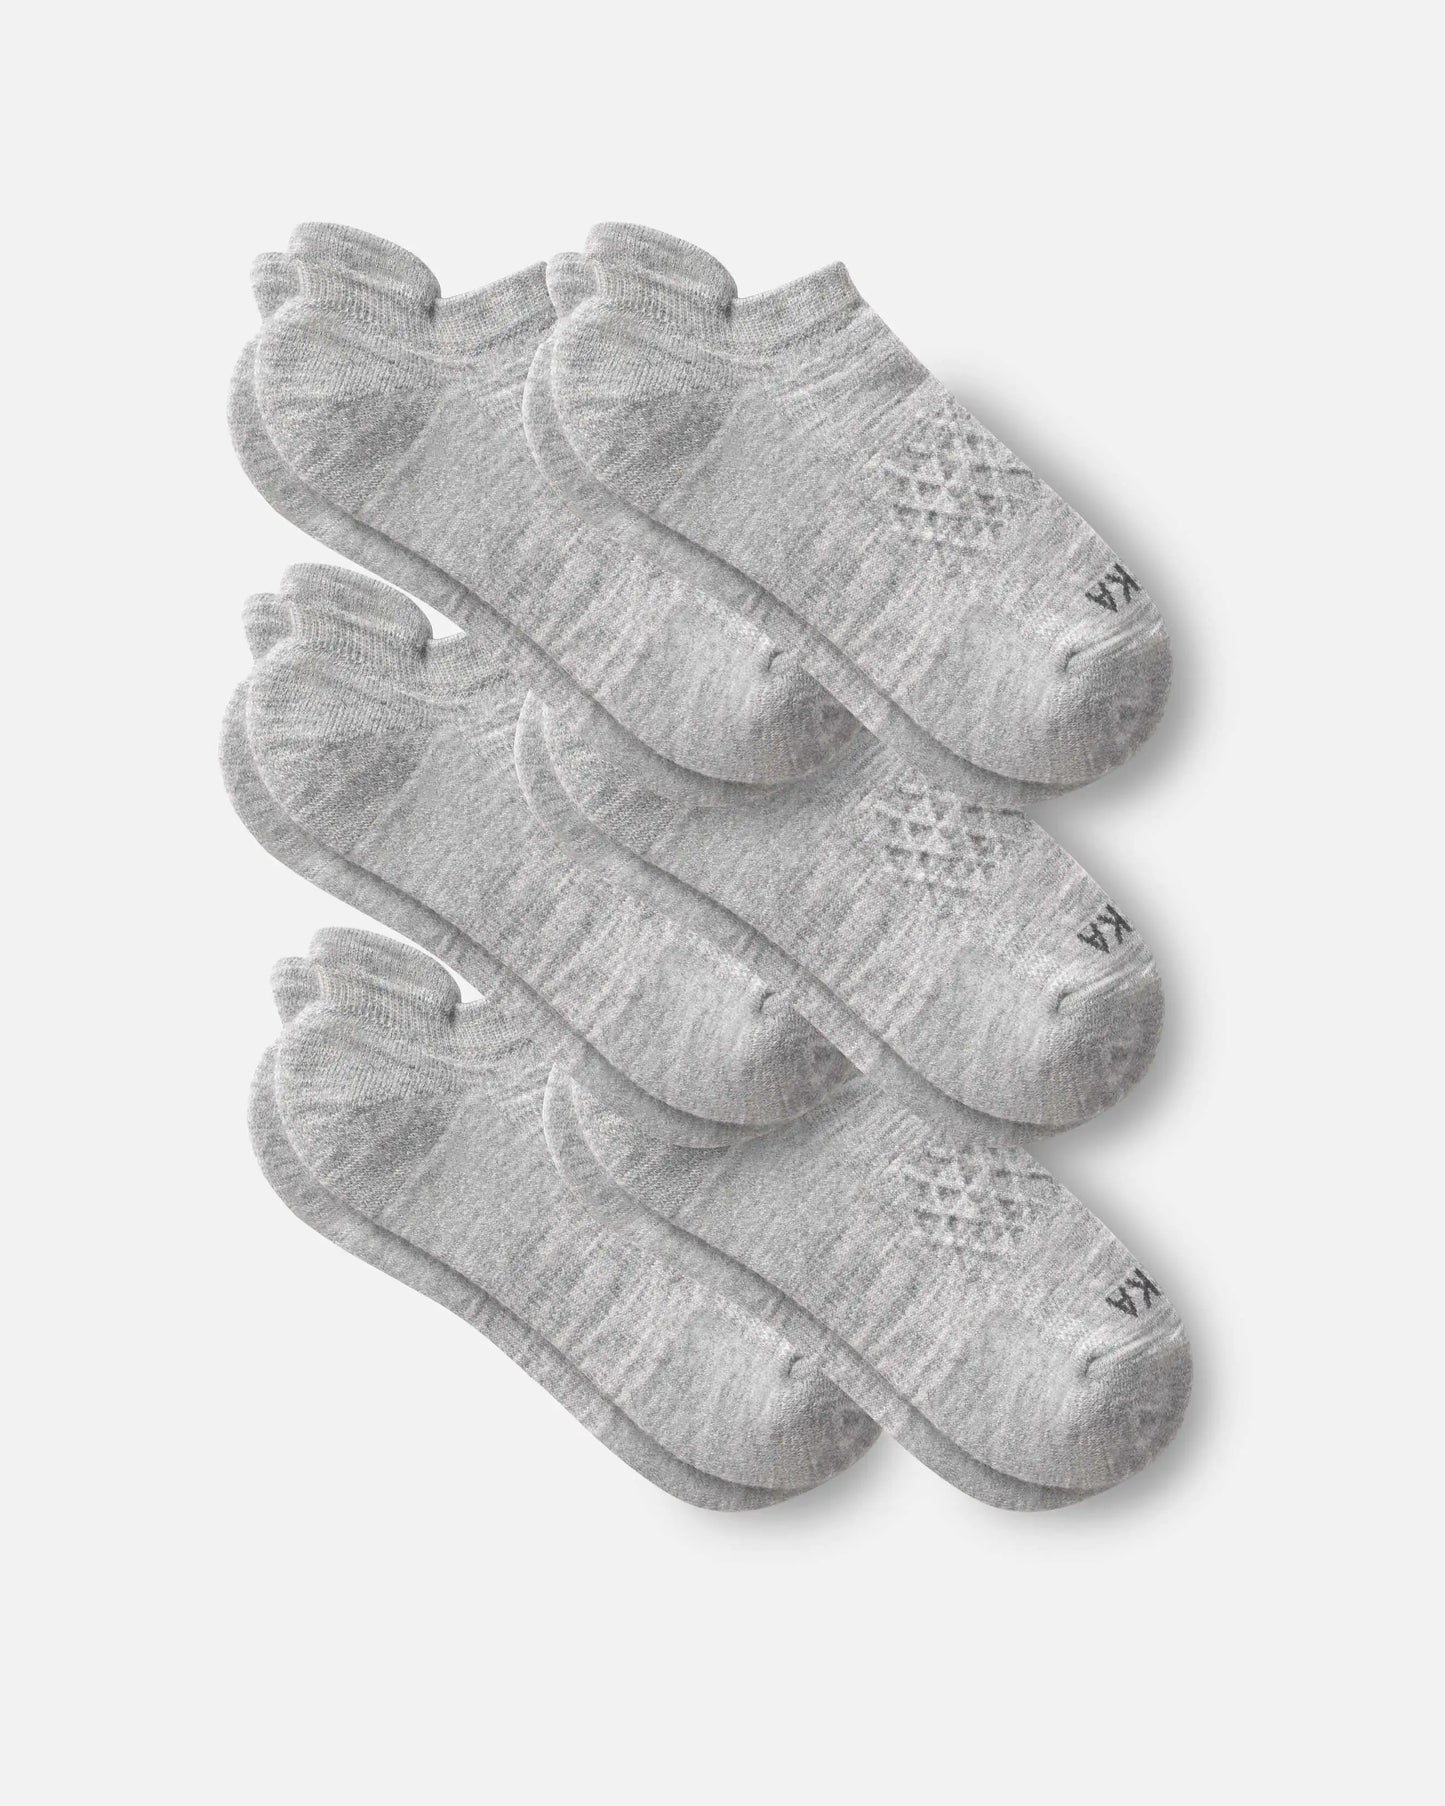 6 pairs of light grey alpaca wool ankle socks